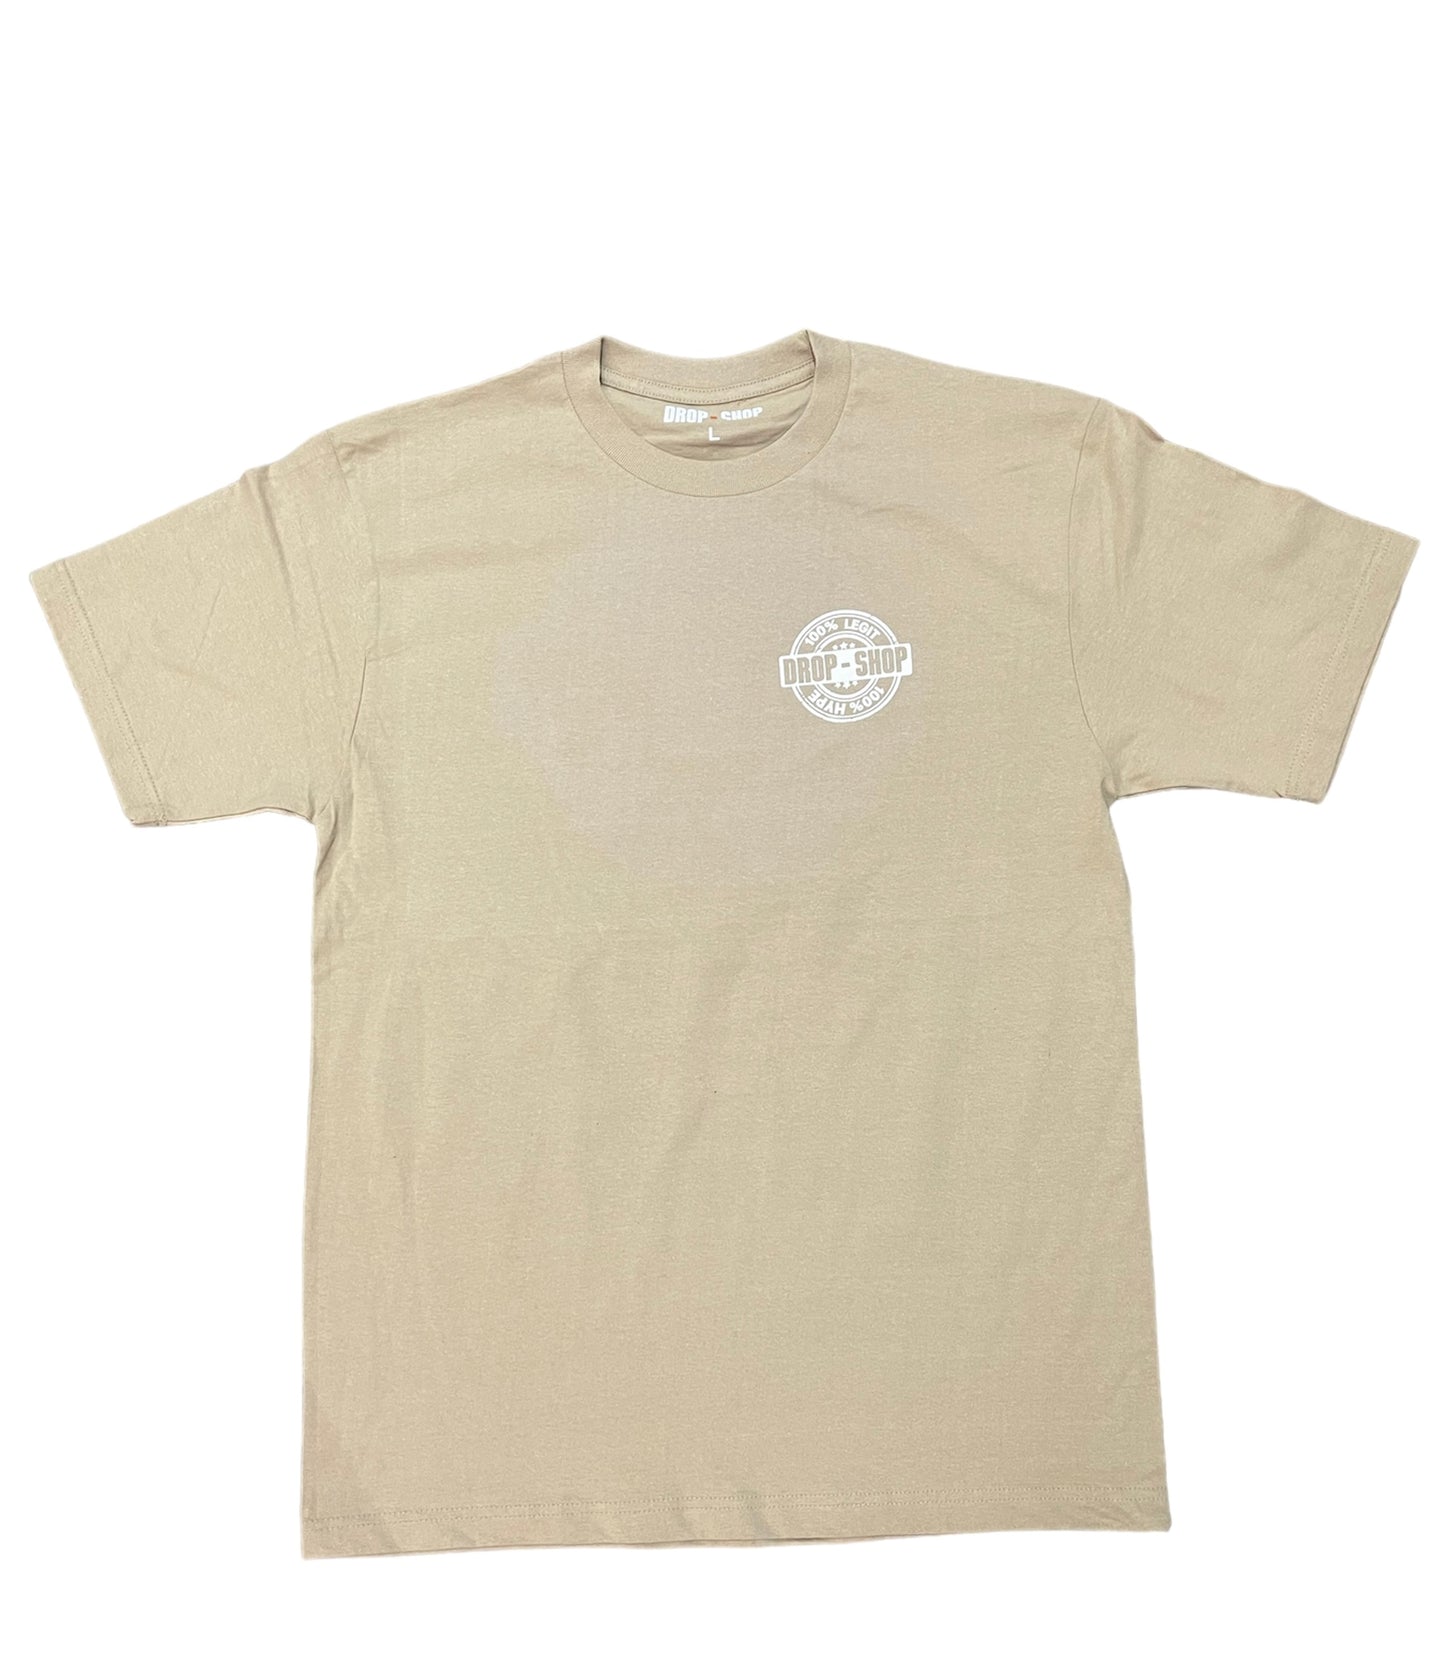 Drop Shop Certified Beige Tshirt